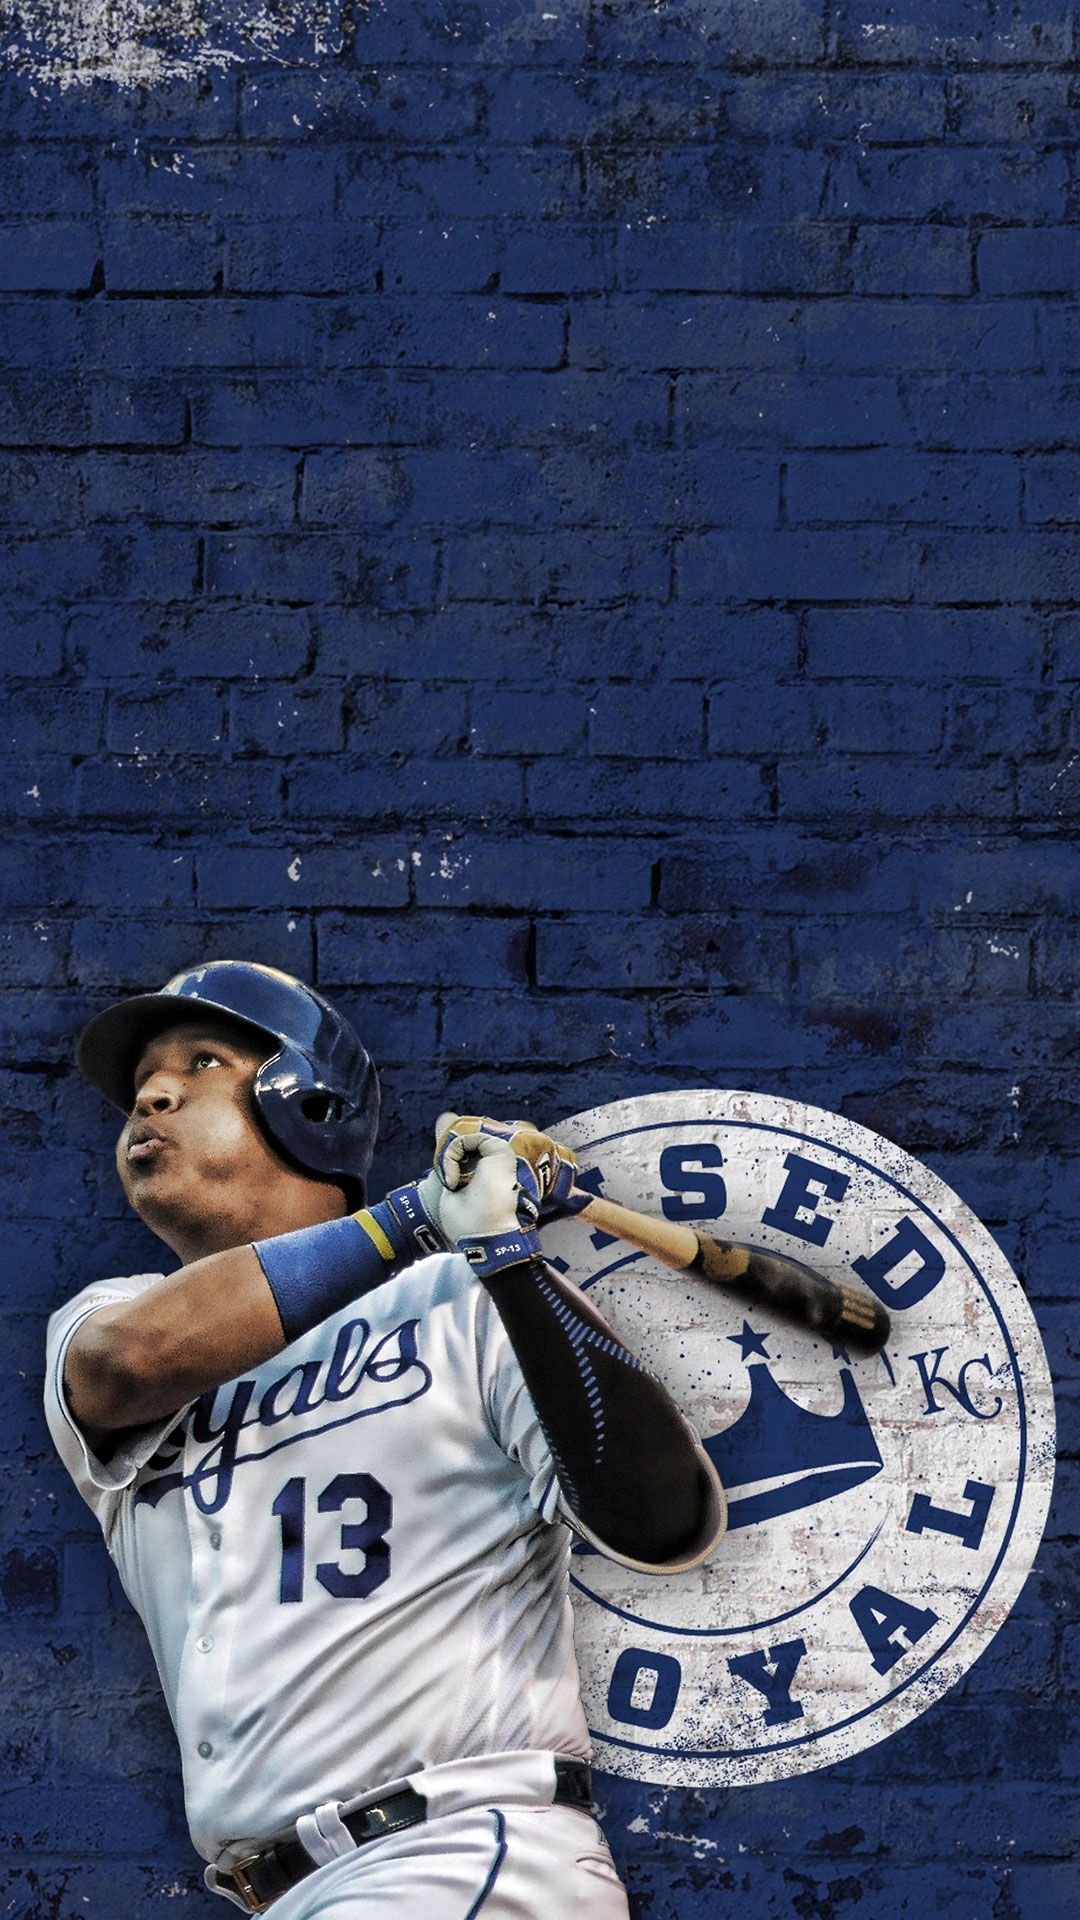 KANSAS CITY ROYALS mlb baseball (28) wallpaper, 2868x1864, 232220